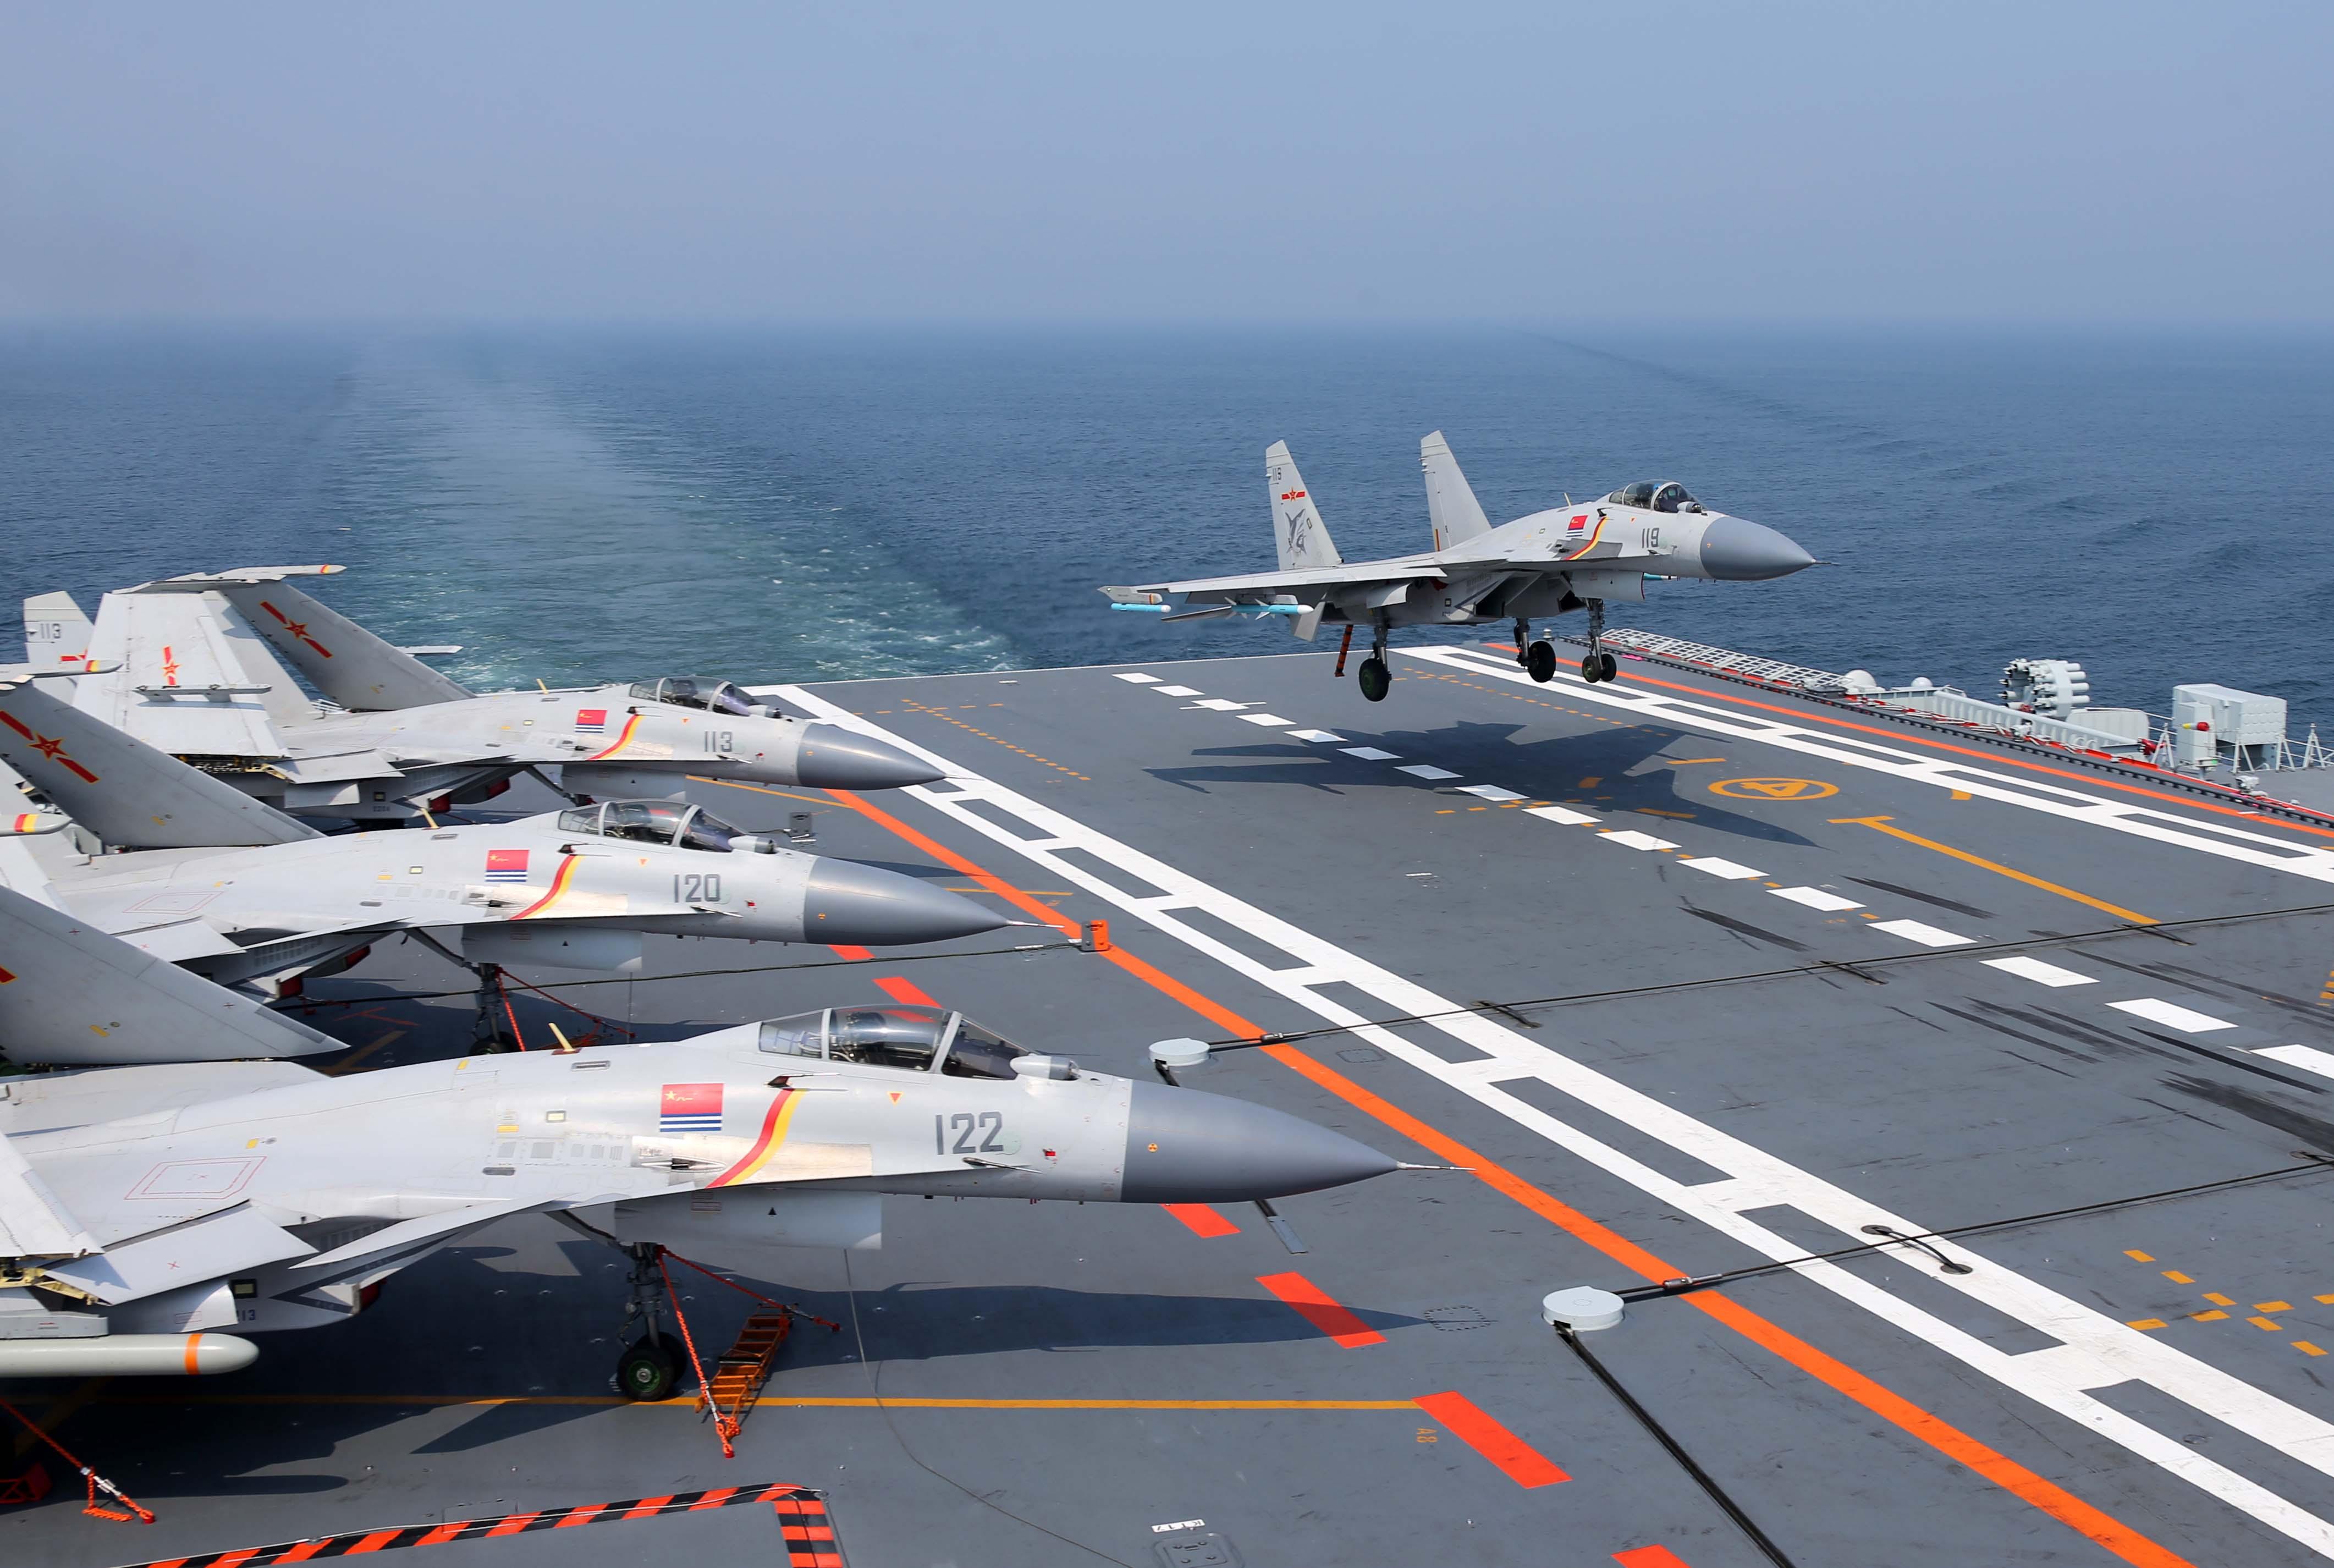 歼15双座型战机现身航母训练基地 大幅加速航母战力提升 - 海洋财富网